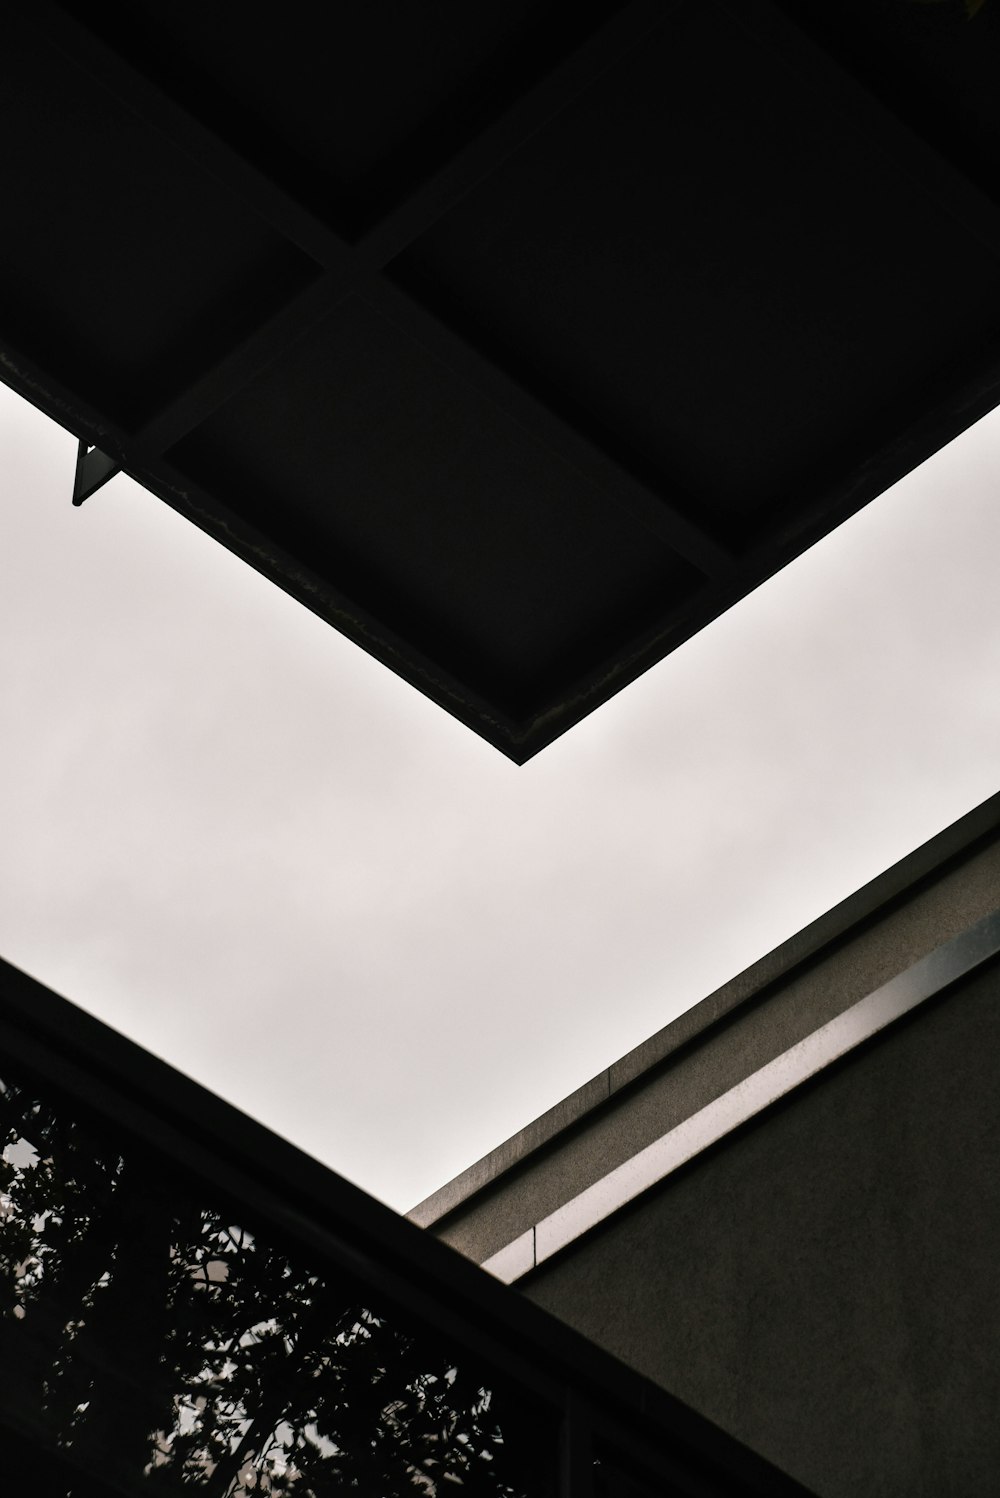 채광창과 건물의 흑백 사진